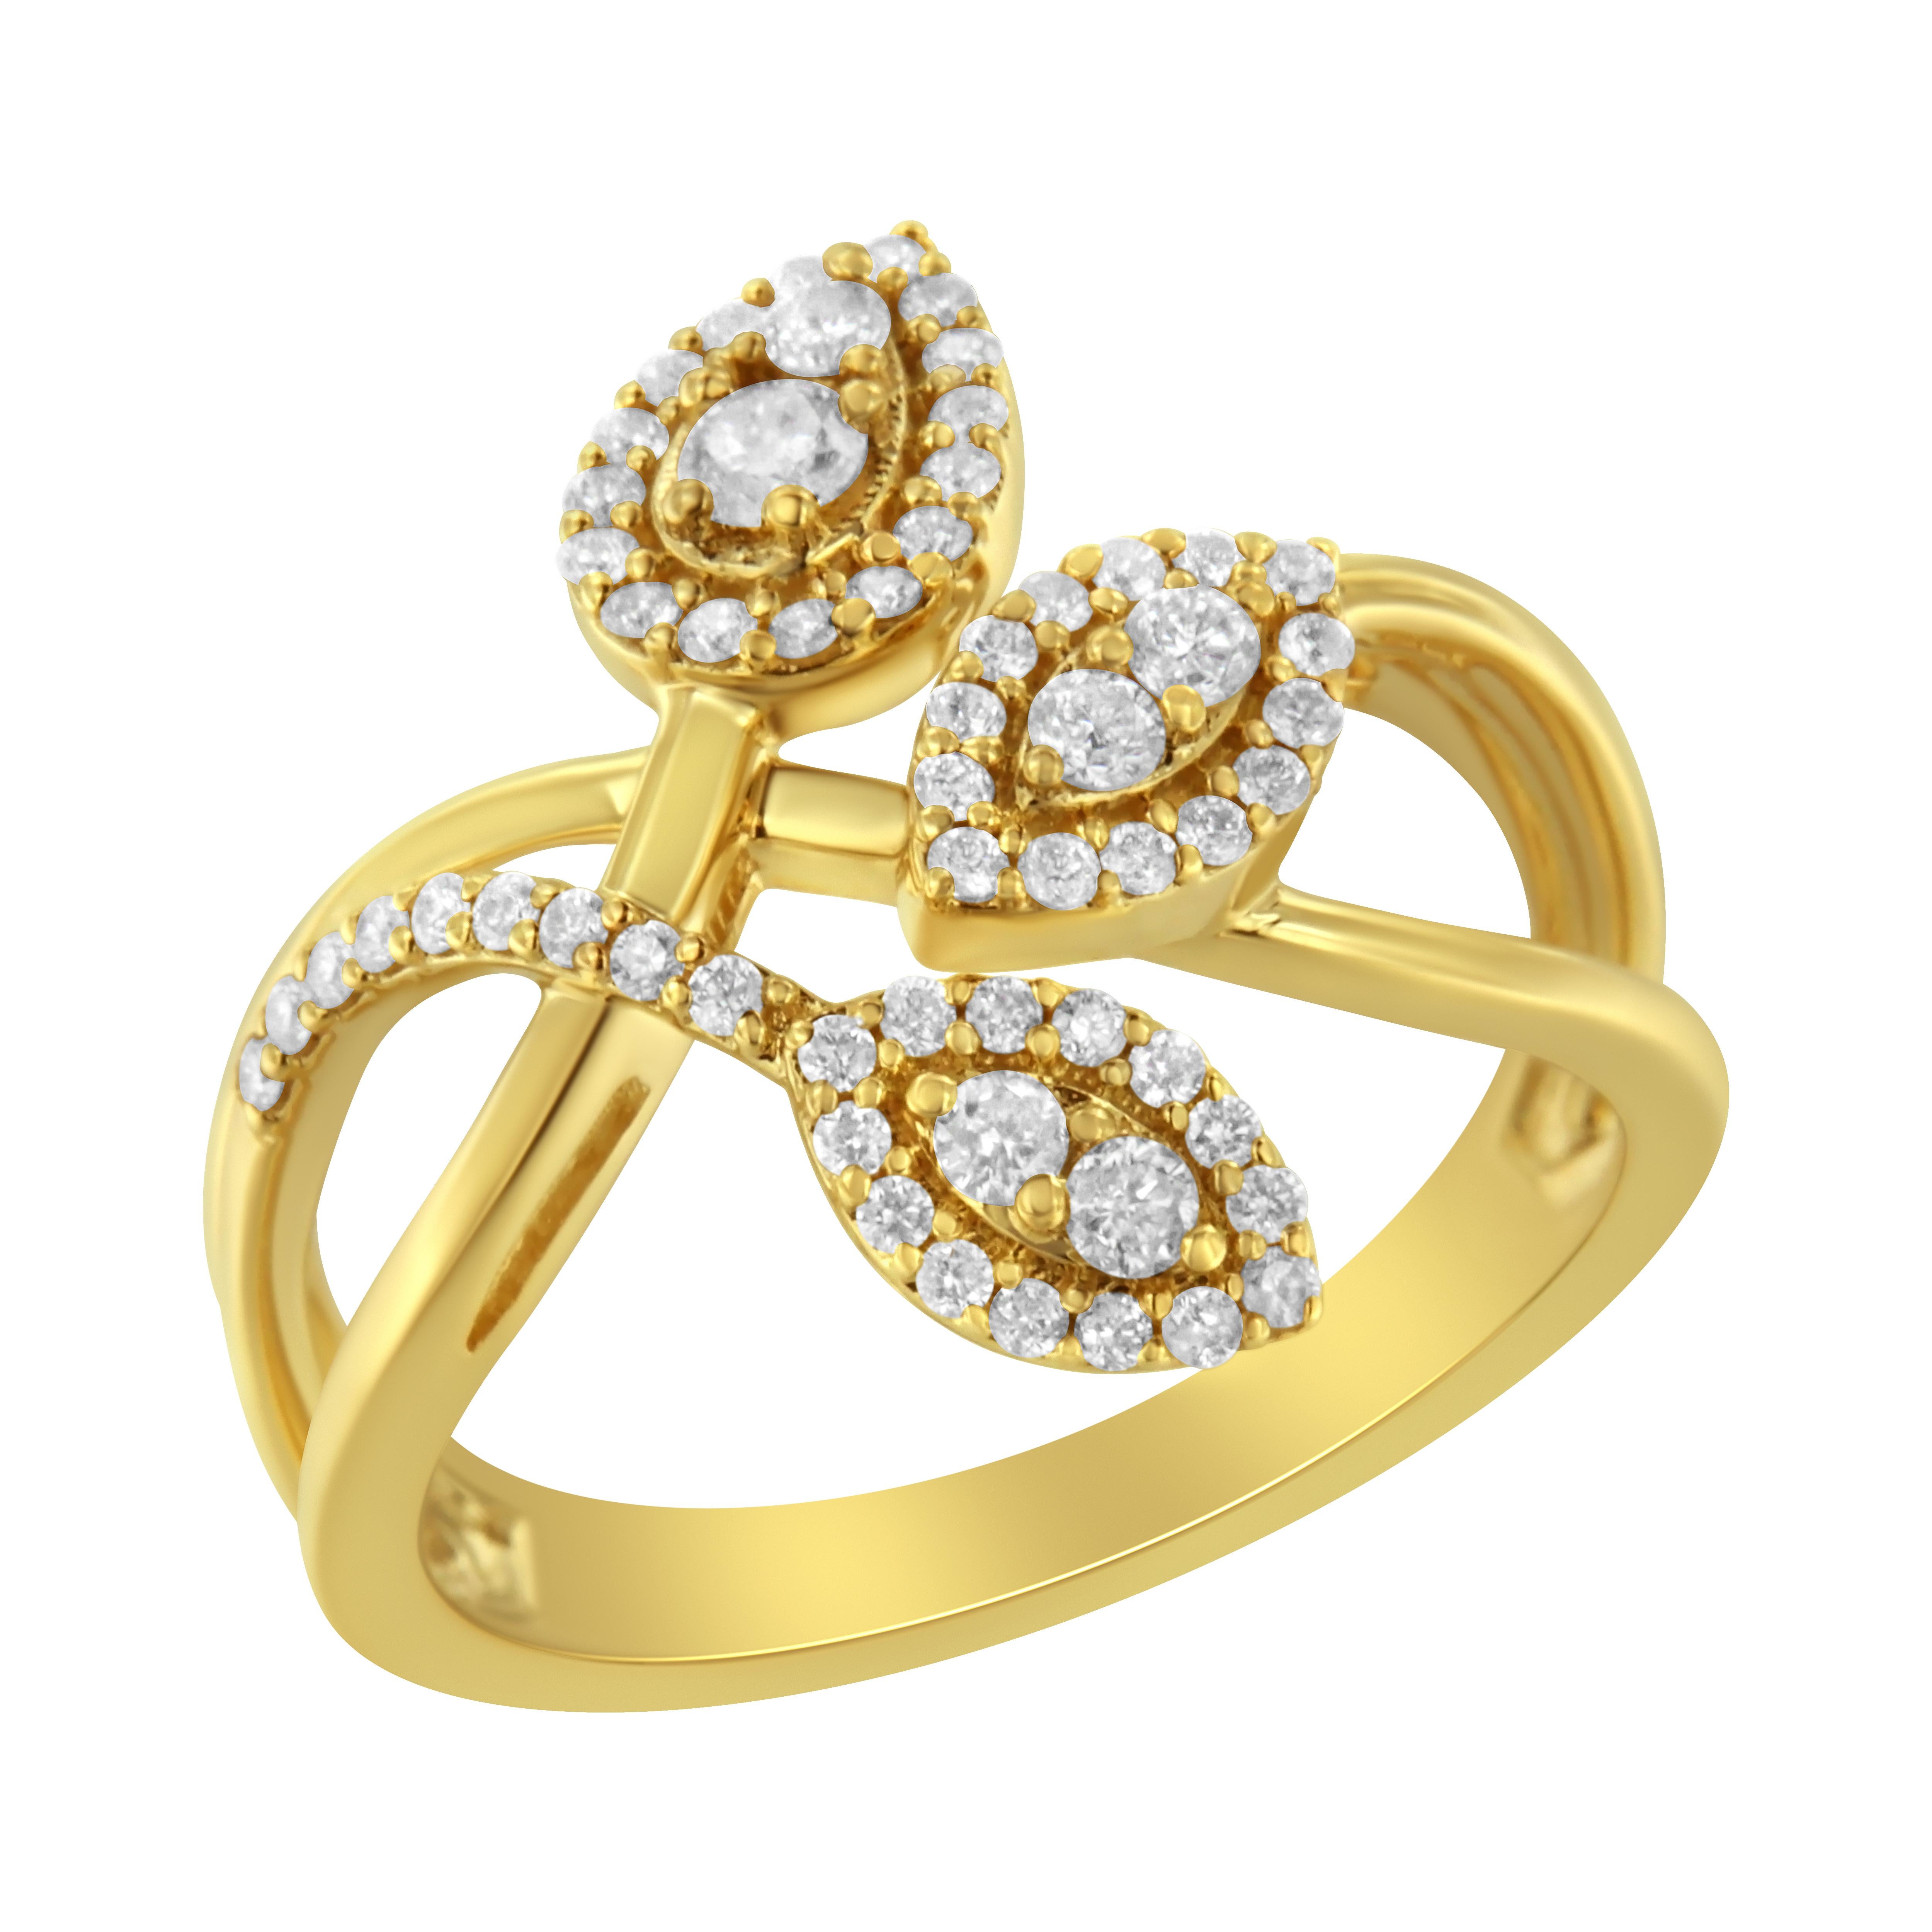 Ergänzen Sie Ihr Outfit mit diesem schönen Blattring. Erstellt in 10k Gelbgold, dieser Ring verfügt über 1/2ct TDW von Diamanten. Ein mehrschichtiges, geteiltes Ringband trägt drei rundgeschliffene, mit Diamanten besetzte Blätter, die Ihrem Tag